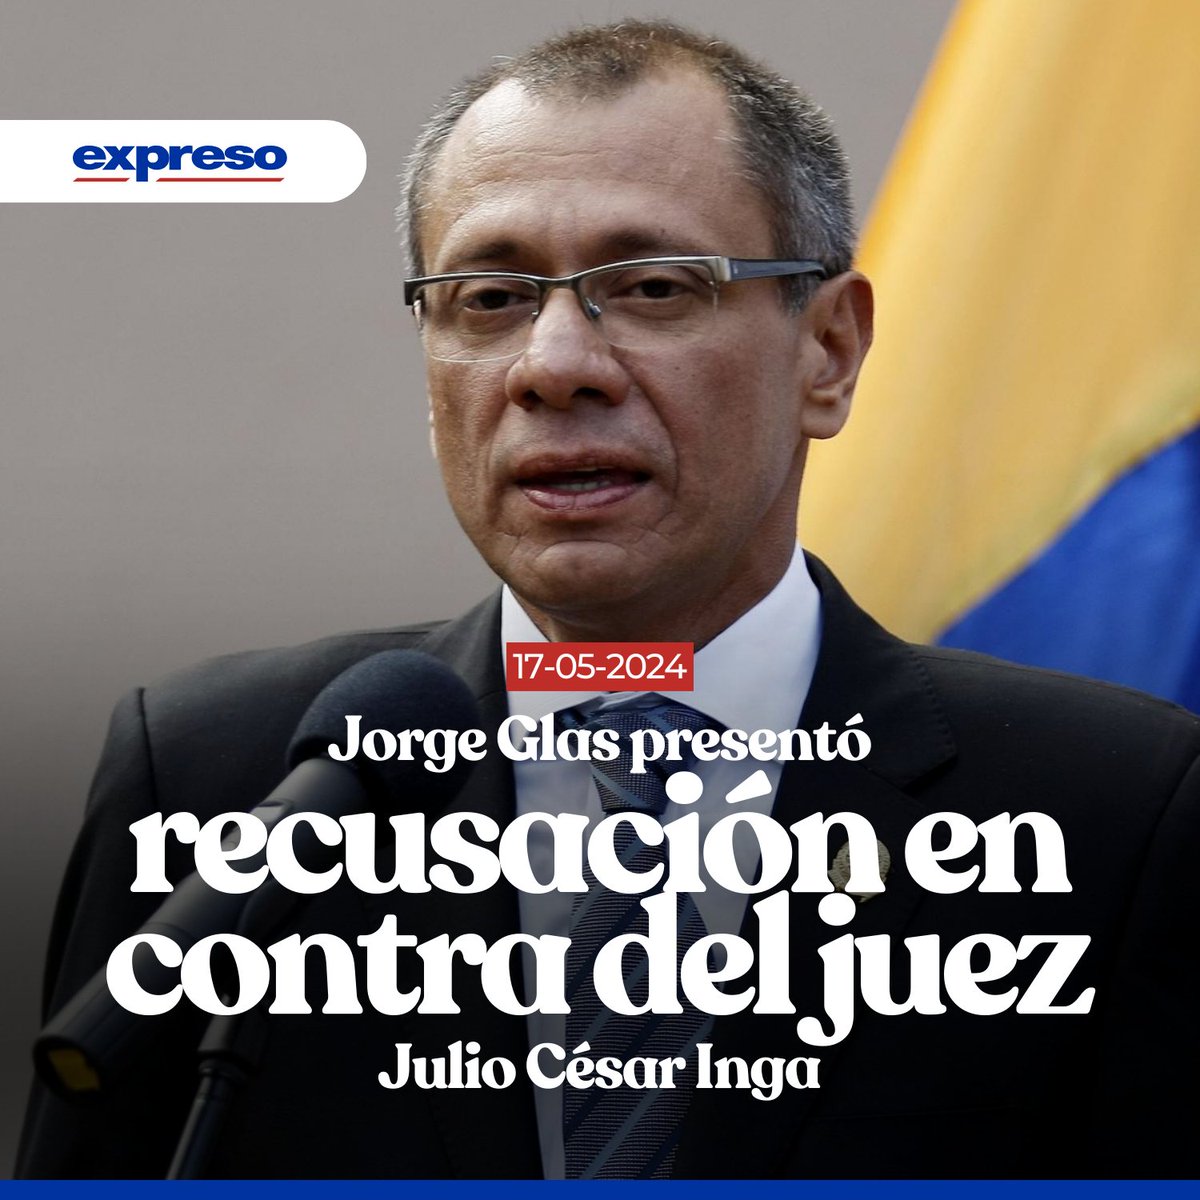 Jorge Glas presentó una recusación en contra del juez de la Corte Nacional de Justicia, Julio César Inga, quien ordenó extraer la información de tres dispositivos móviles que fueron retirados al exfuncionario durante su detención en la Embajada de México en Quito. Lee más 👉